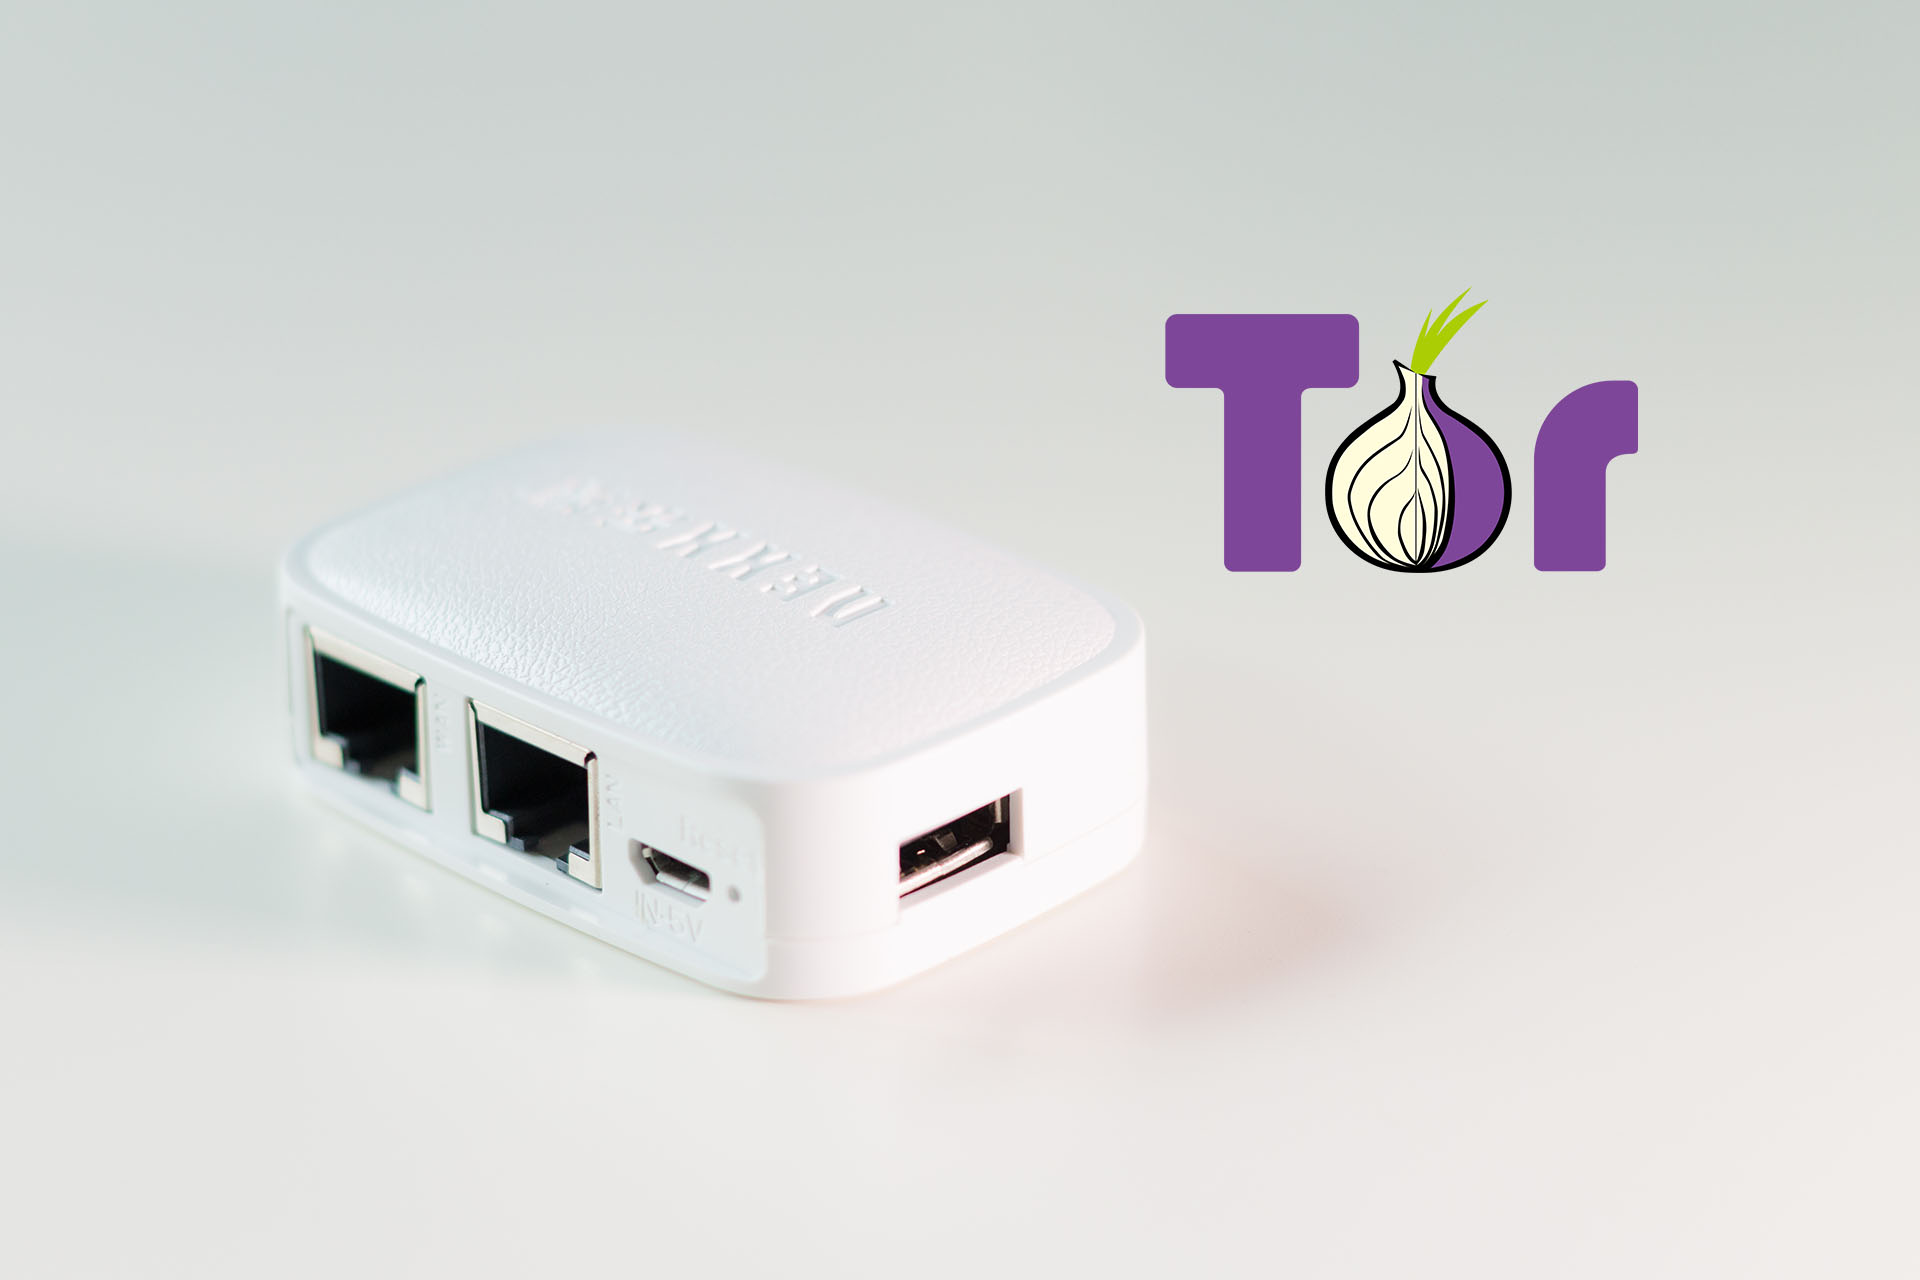 Tor2Door Link